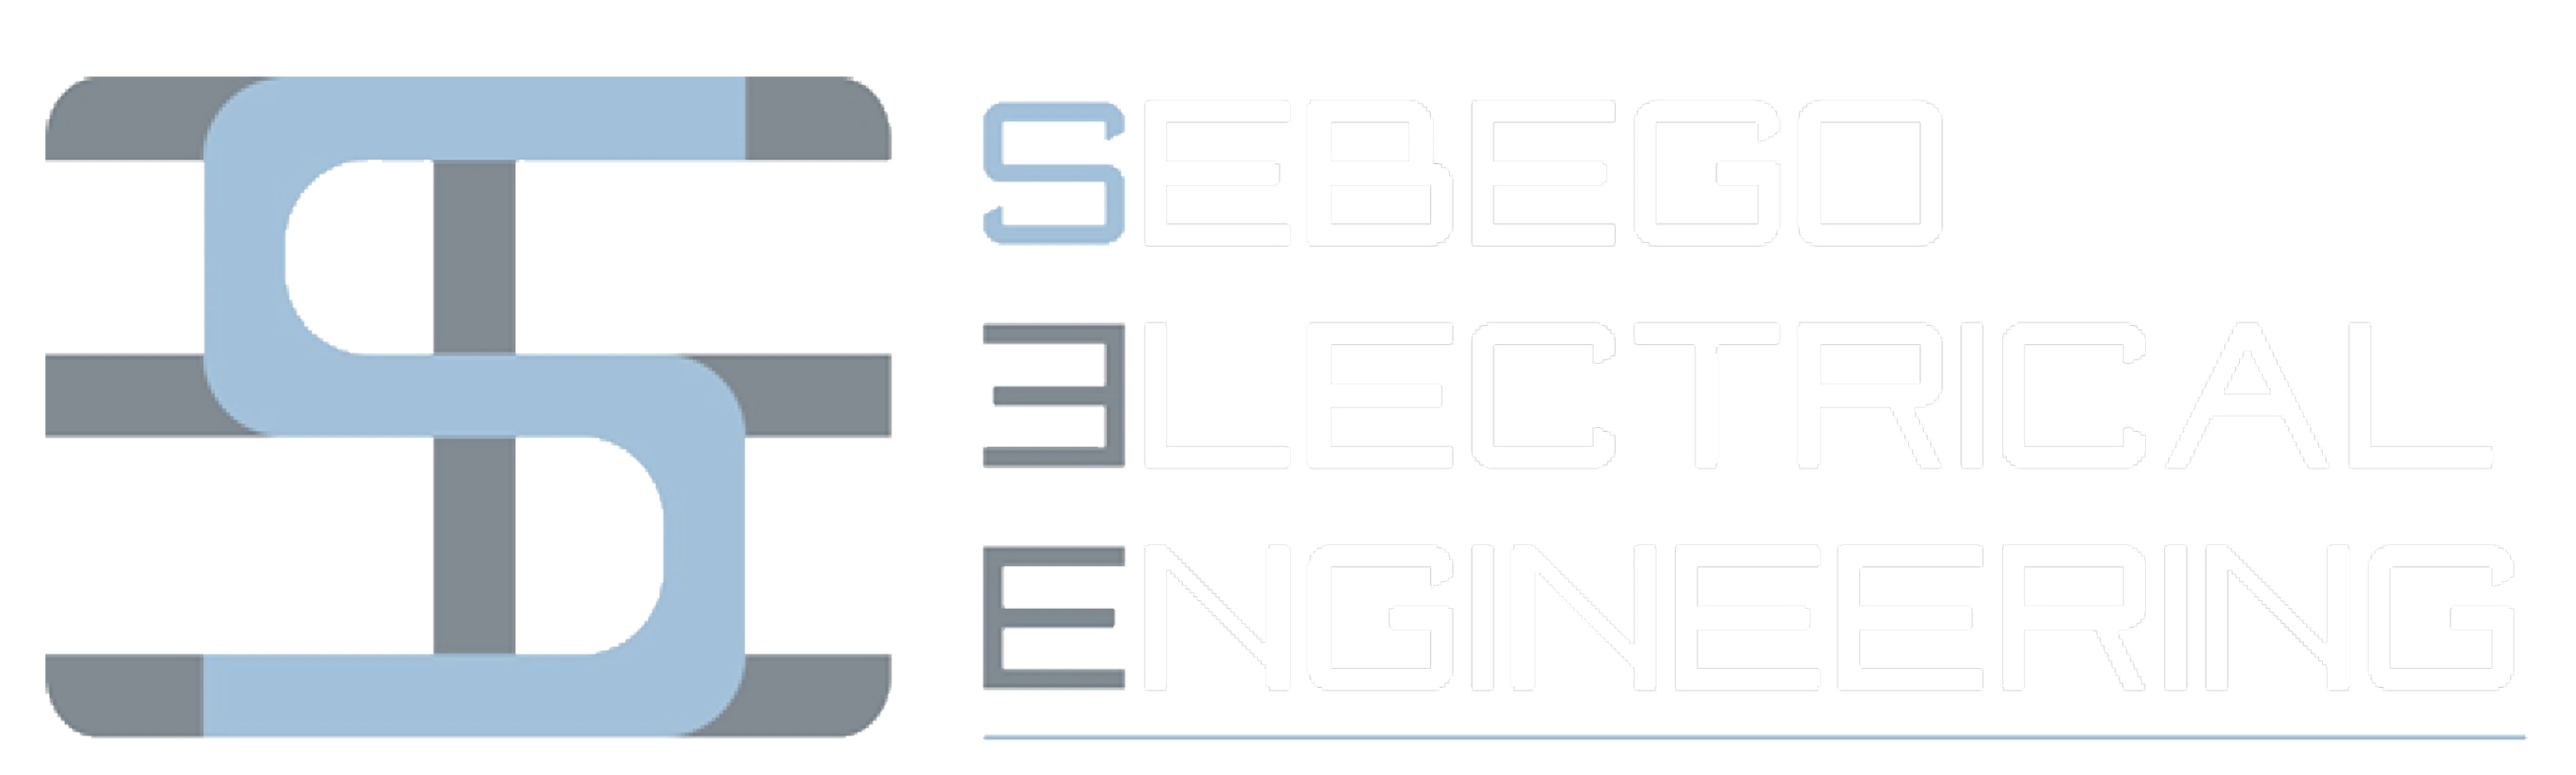 Sebego Electrical Engineering